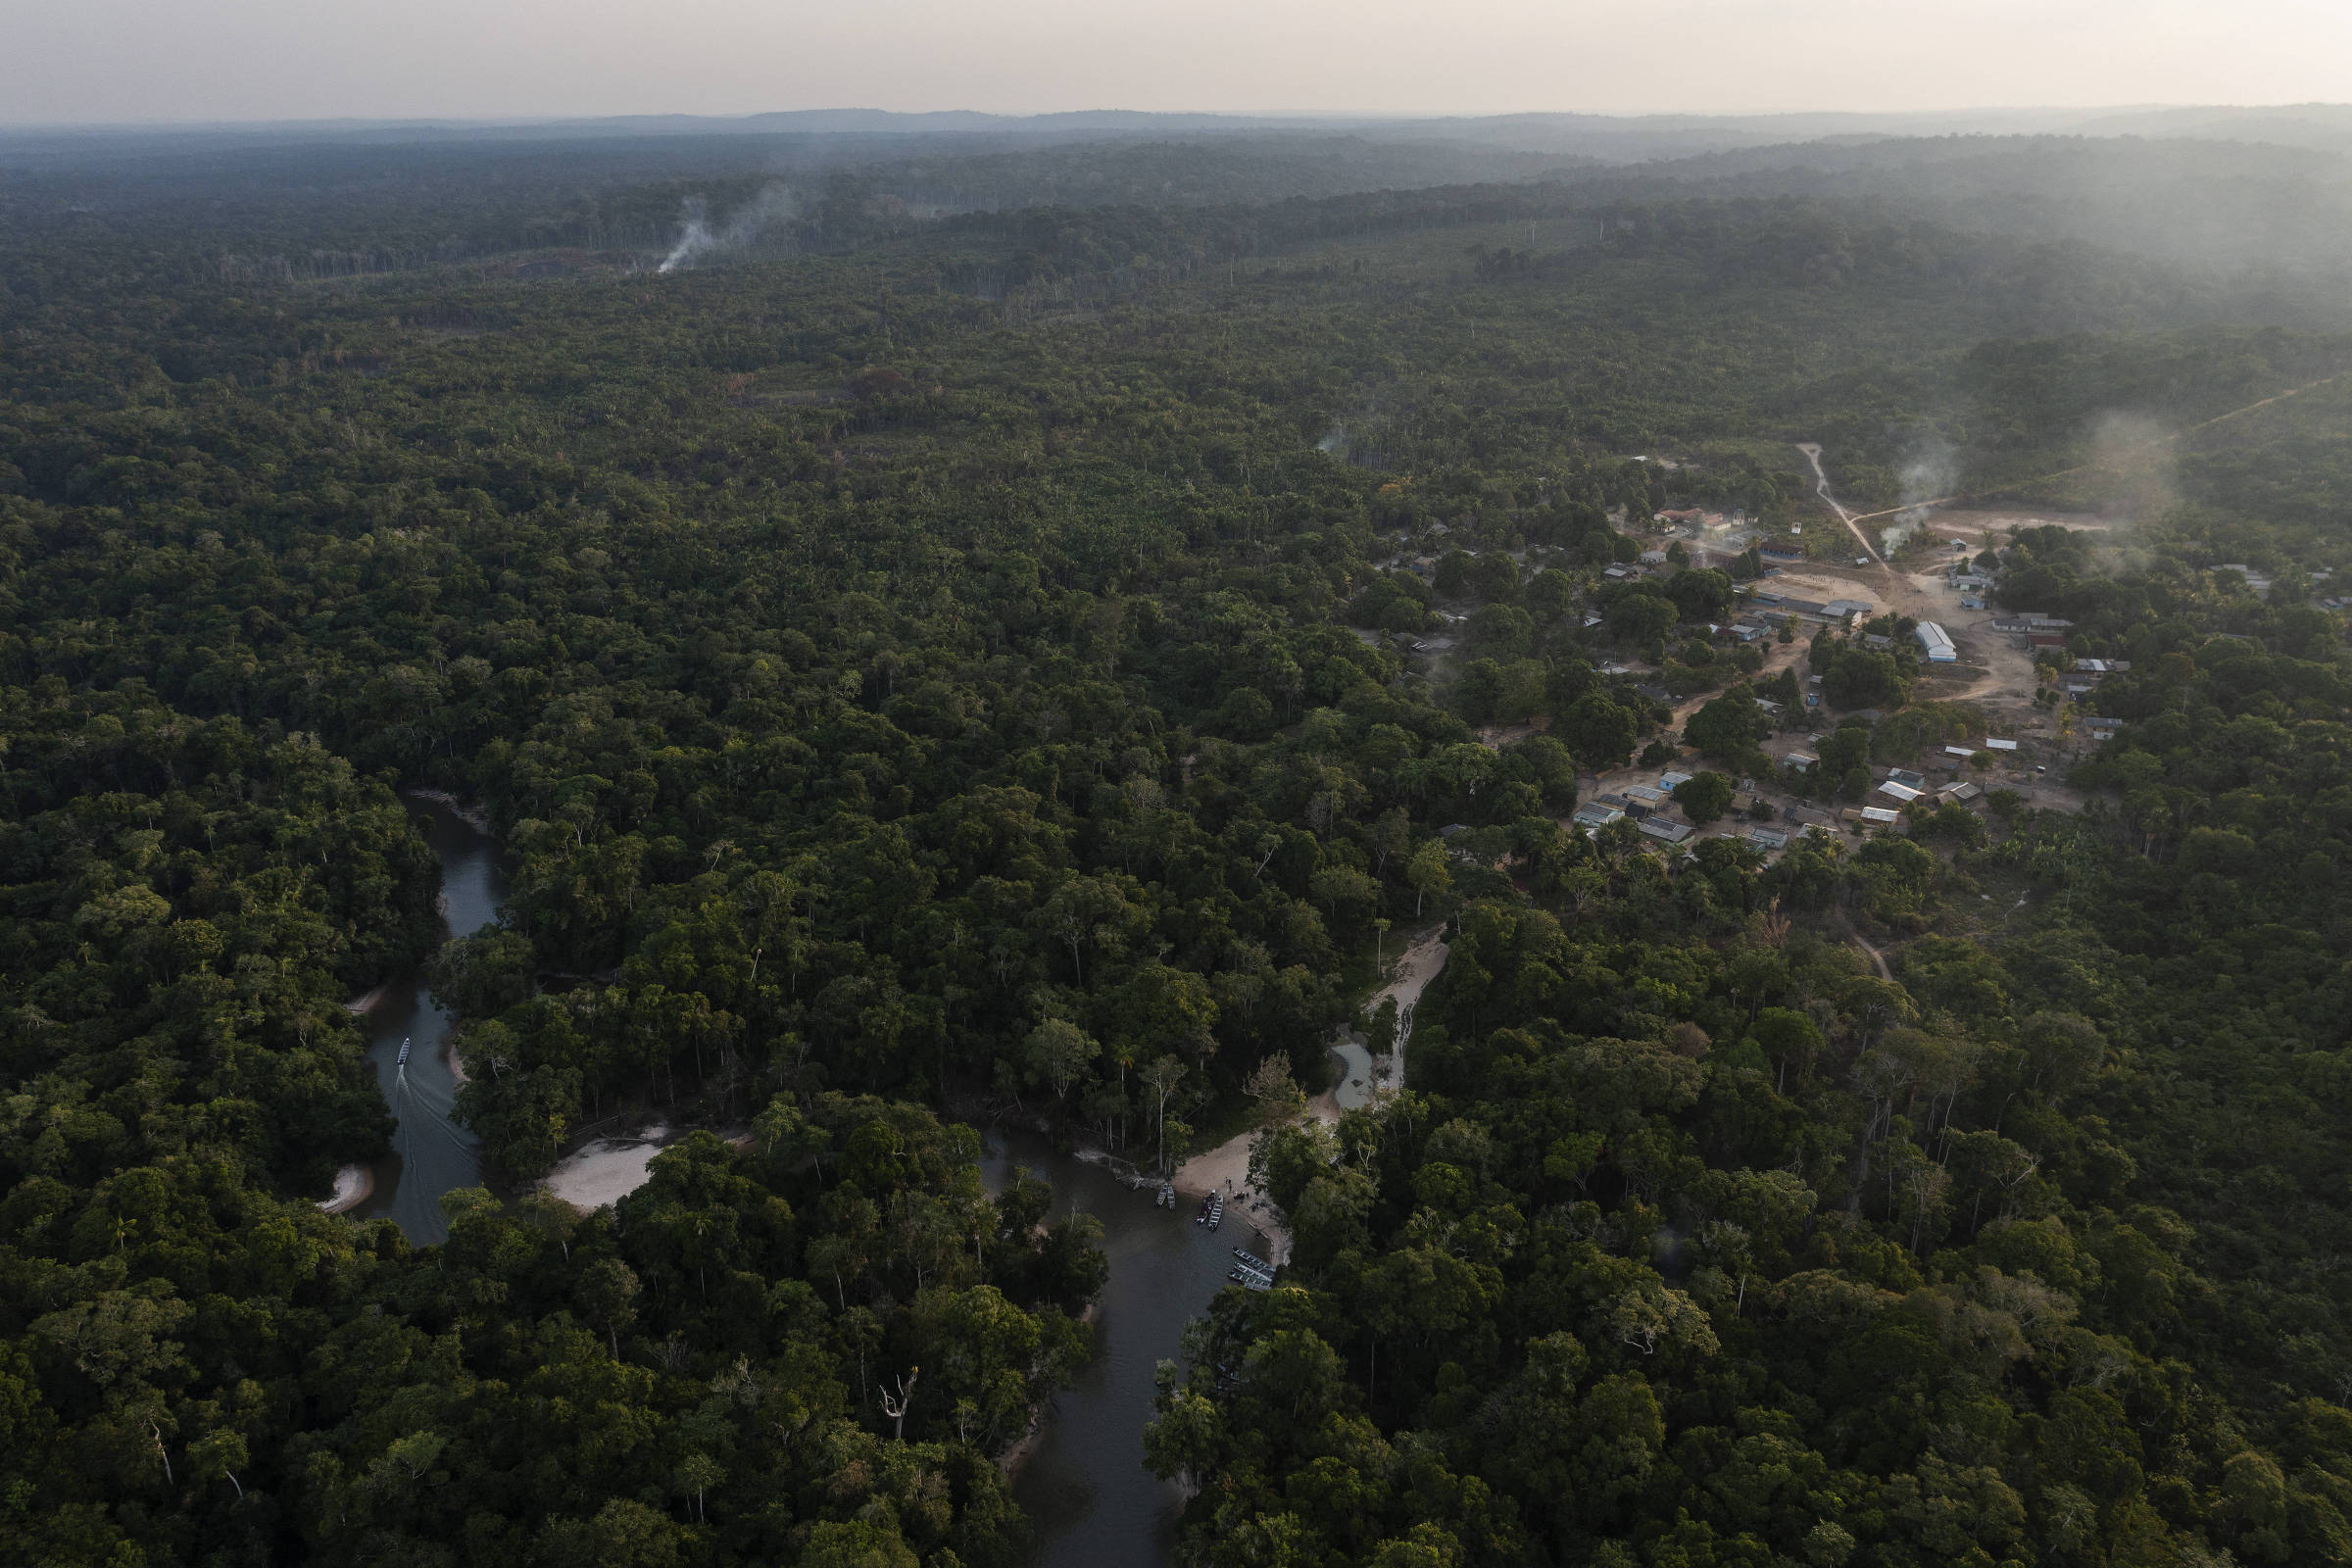 Vista de drone da aldeia no meio da floresta preservada